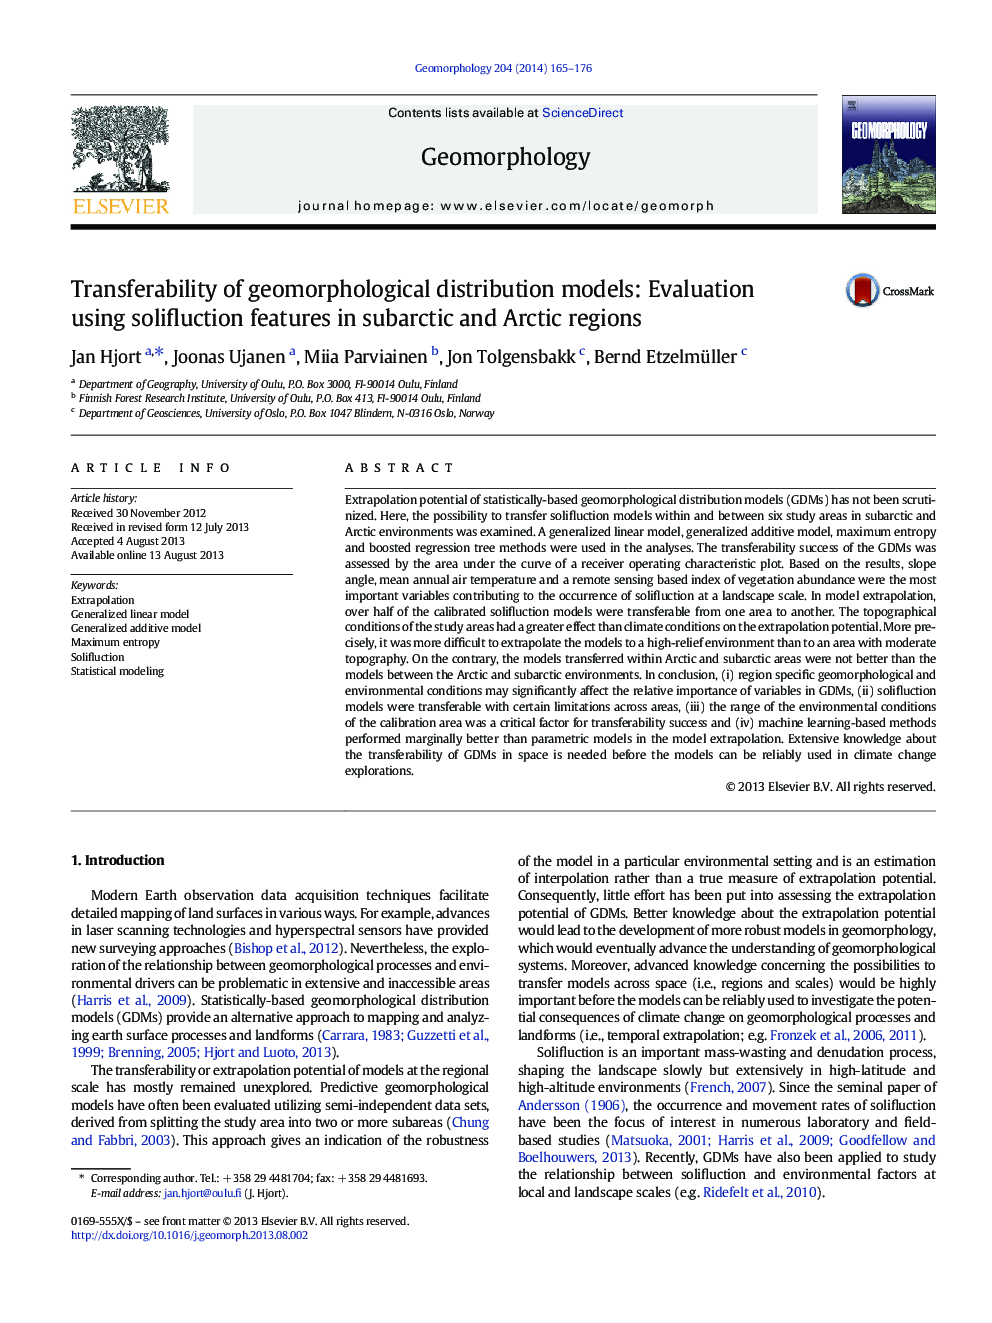 قابلیت انتقال مدل های توزیع ژئومورفولوژیکی: ارزیابی با استفاده از ویژگی های سلفالکس در مناطق سابارکتیک و قطب شمال 